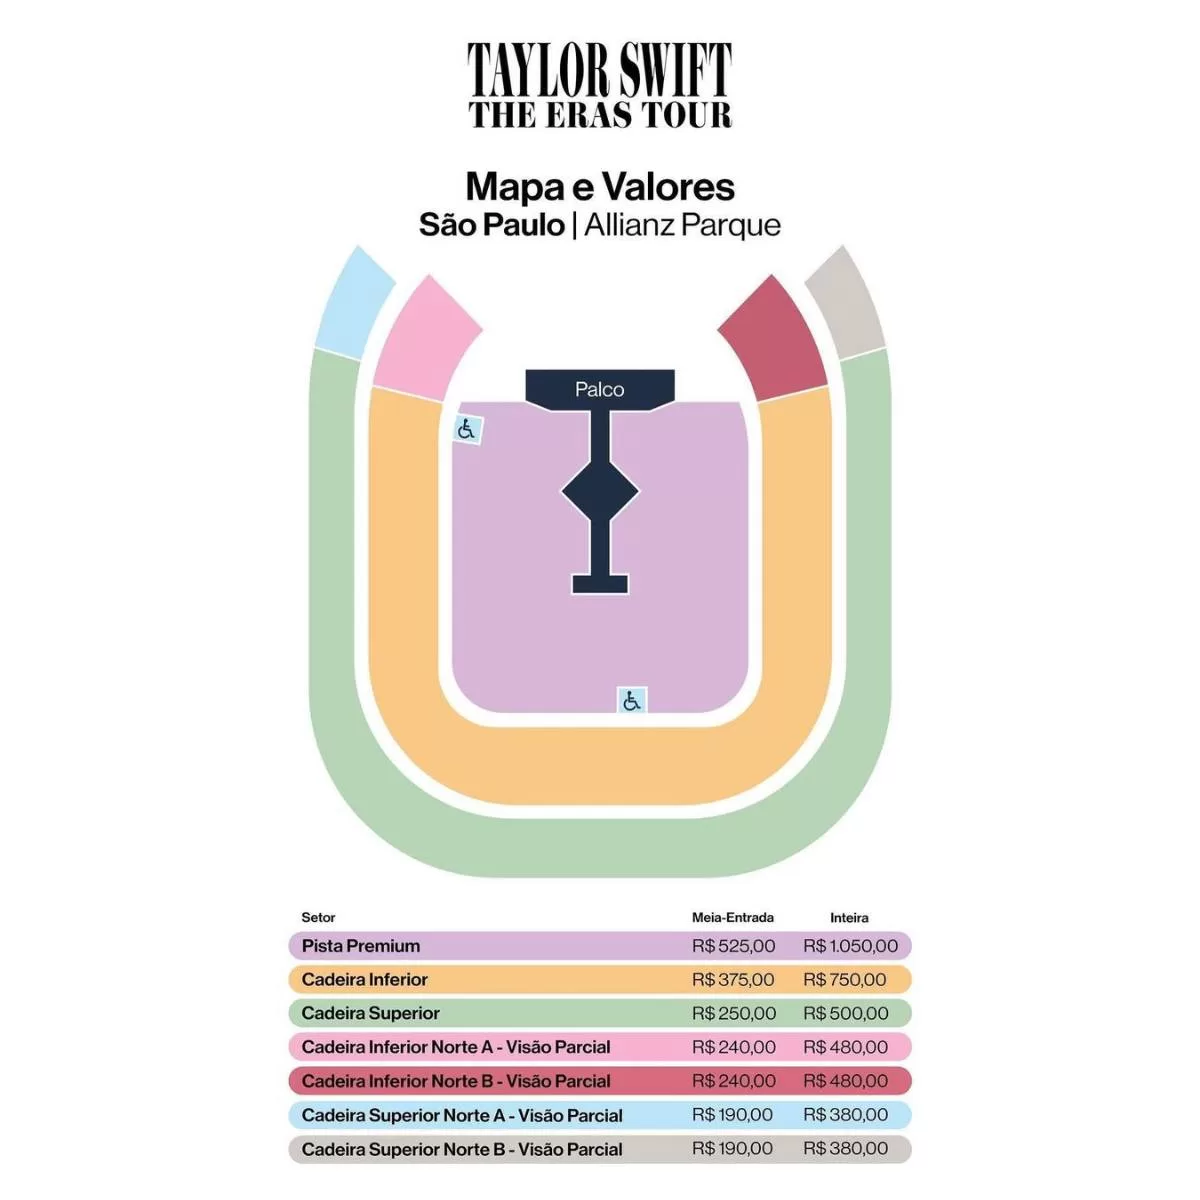 Taylor Swift en Brasil ¿Cuánto valen las entradas para "The Eras Tour